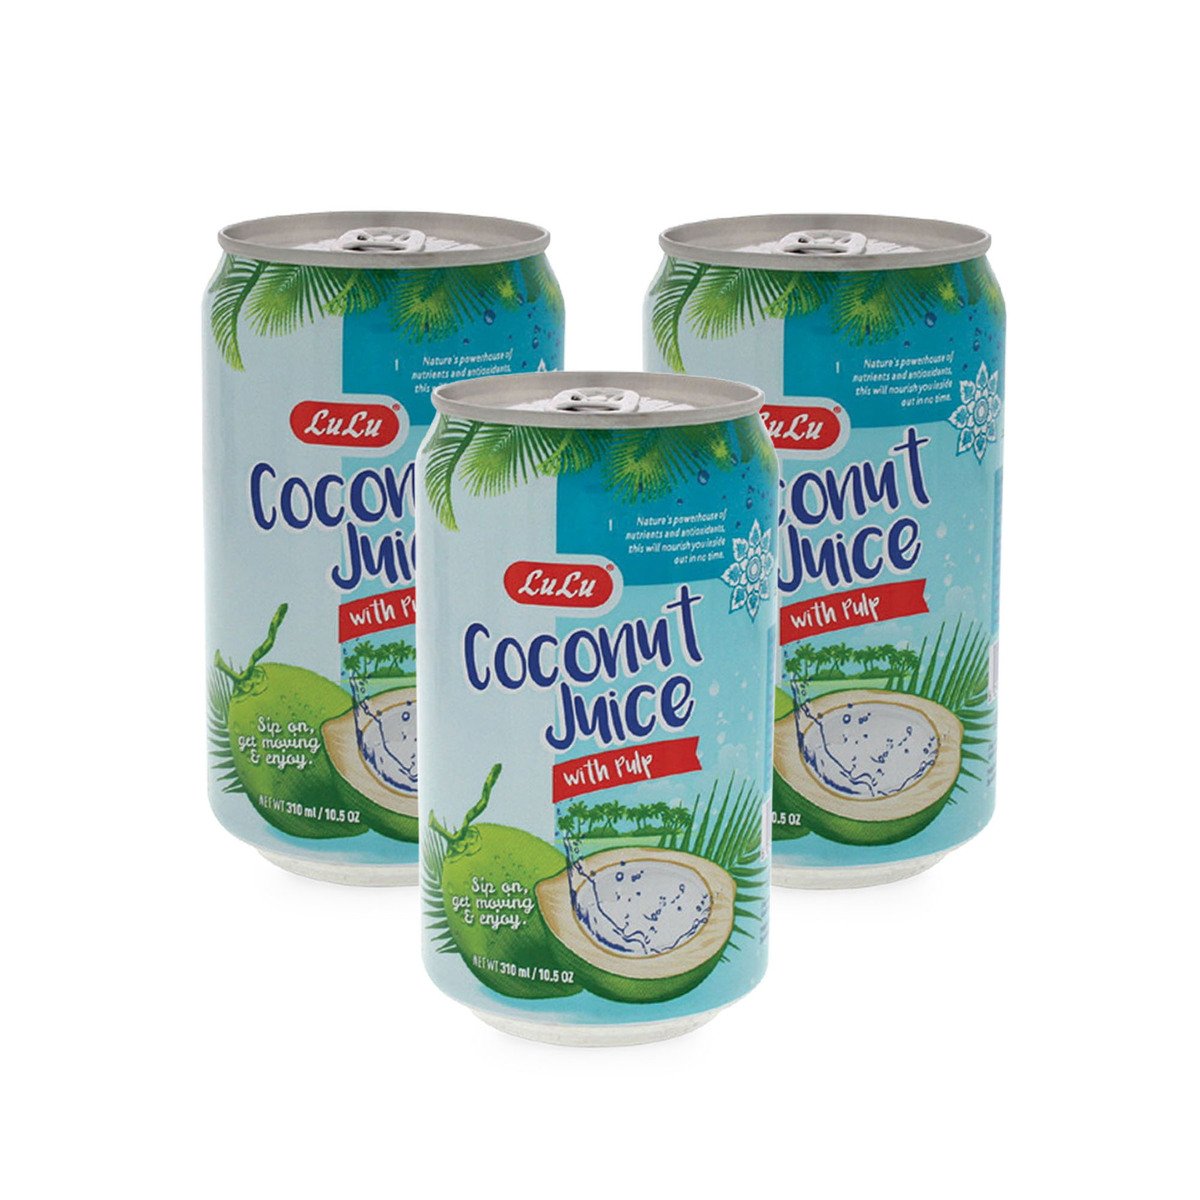 LuLu Coconut Juice with Pulp 3 x 310 ml